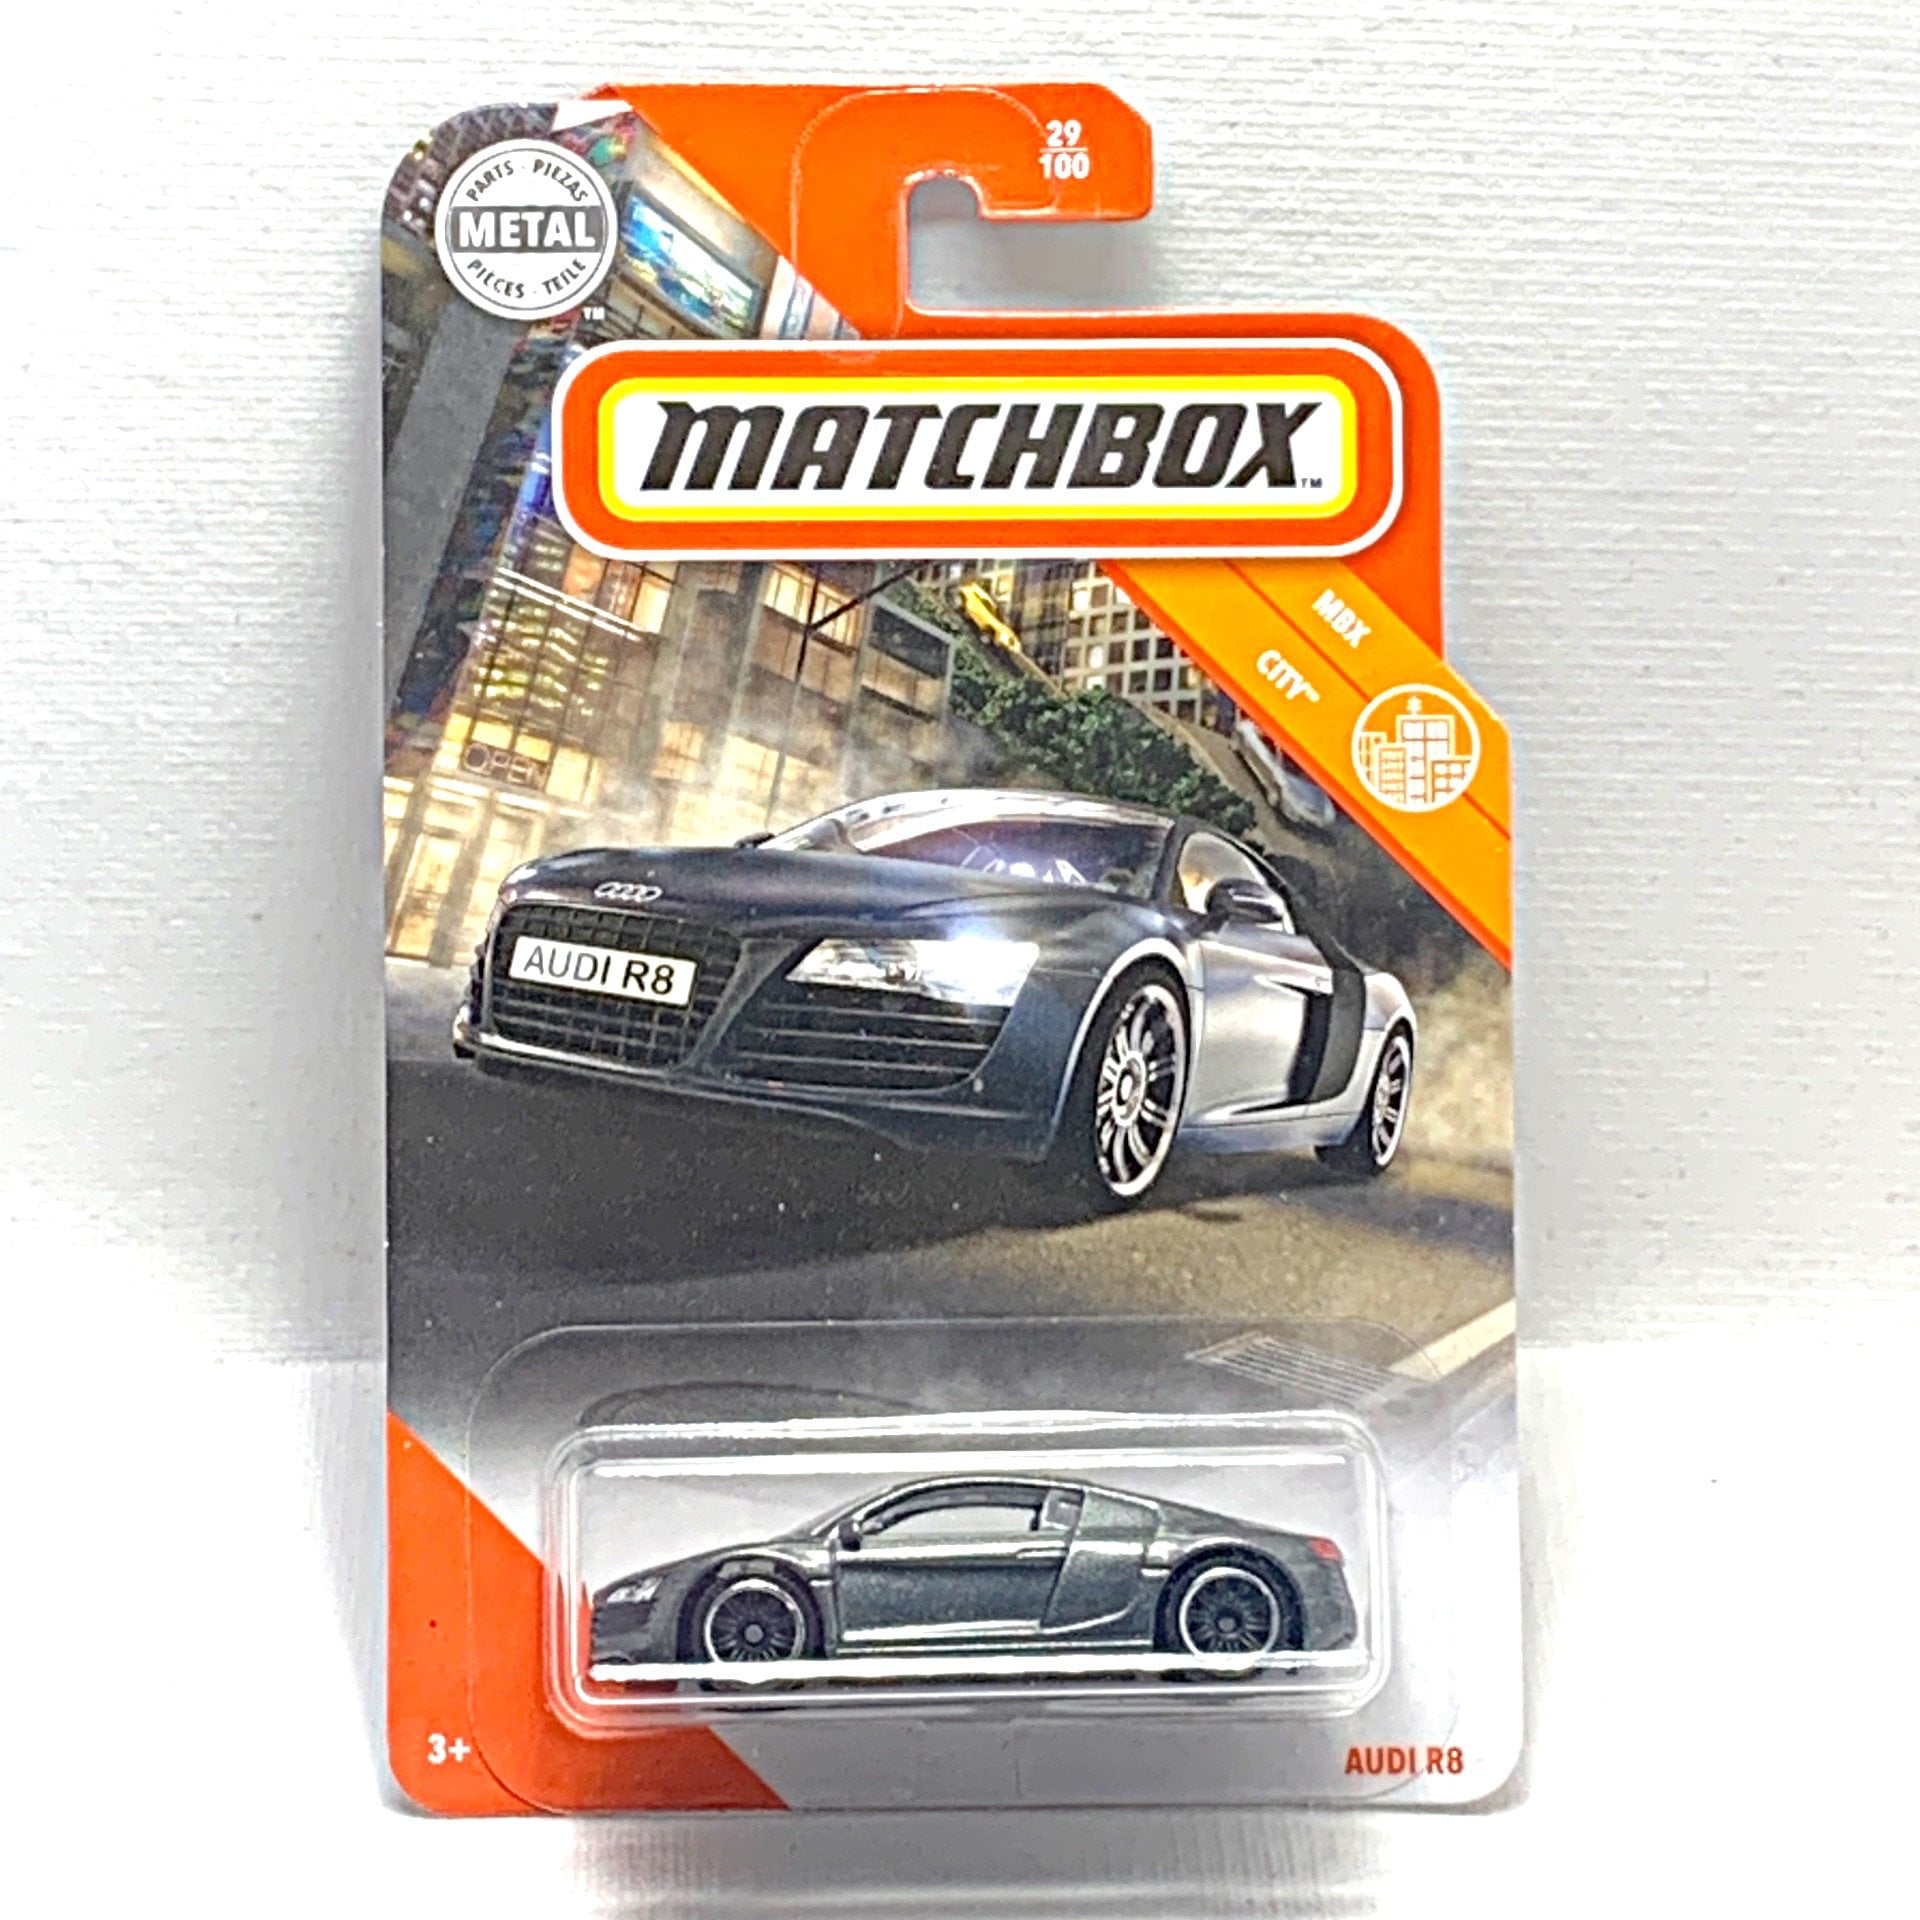 Mattel Metal Matchbox AUDI R8 MBX City for sale online